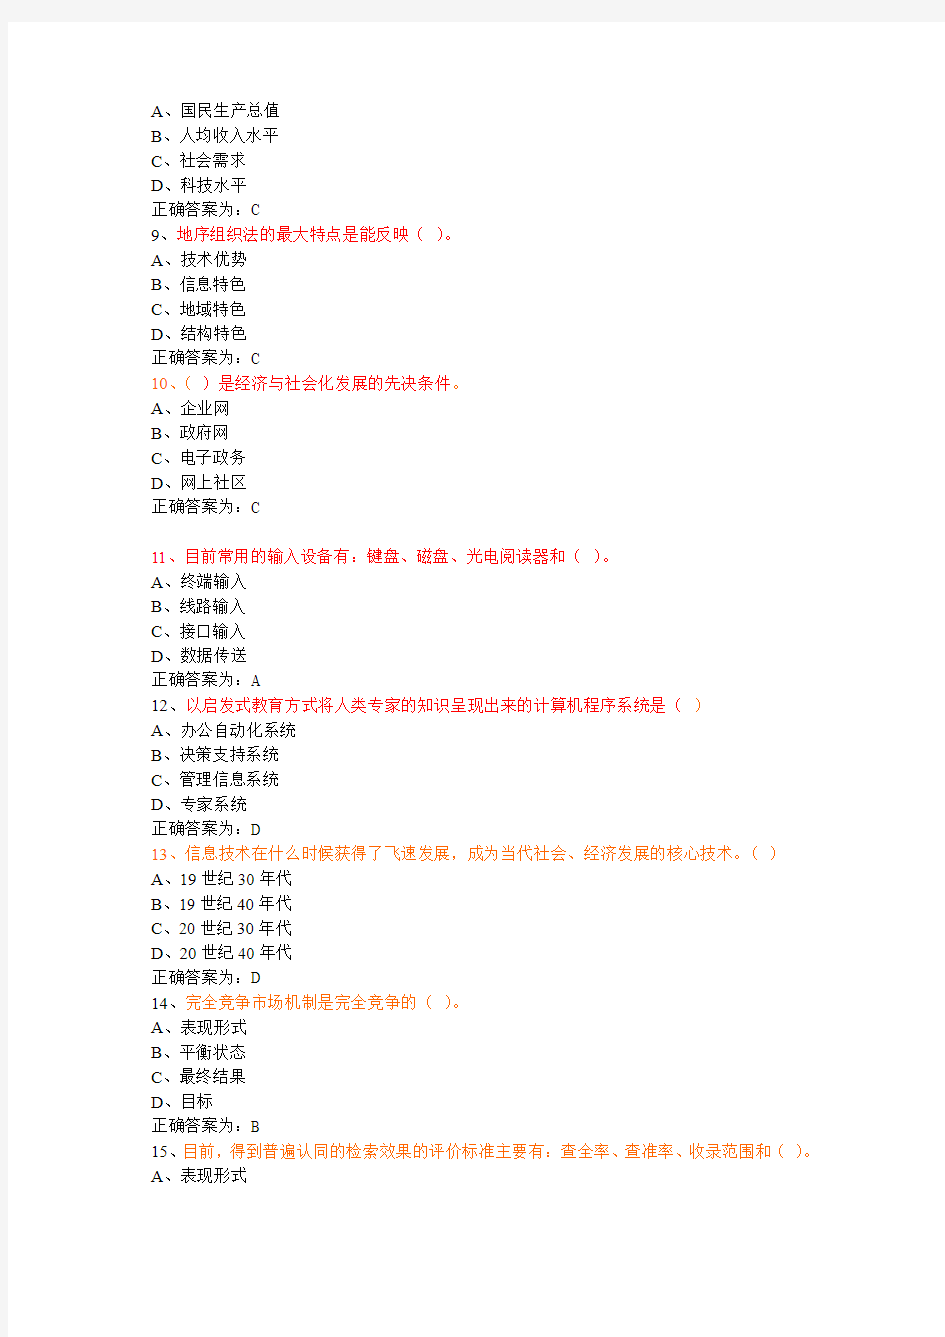 建宁县2013年信息化能力建设教程题库(单选)